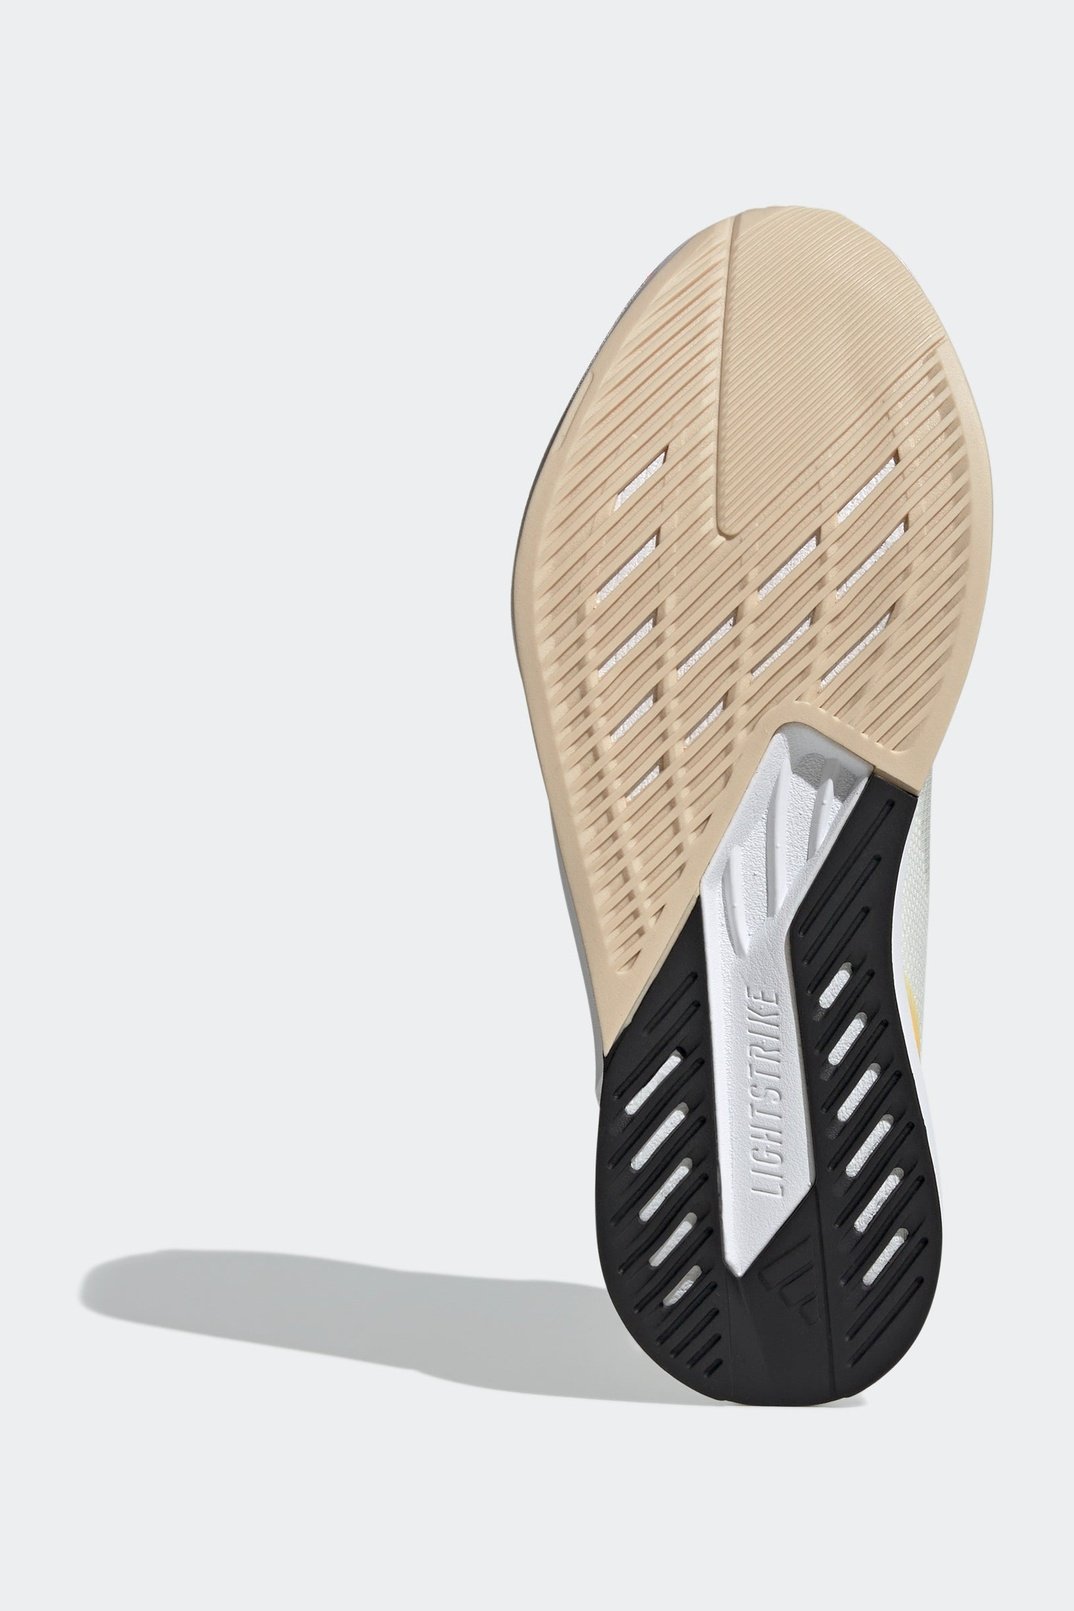 נעלי ספורט לגברים DURAMO SPEED בצבע שחור שנהב וצהוב